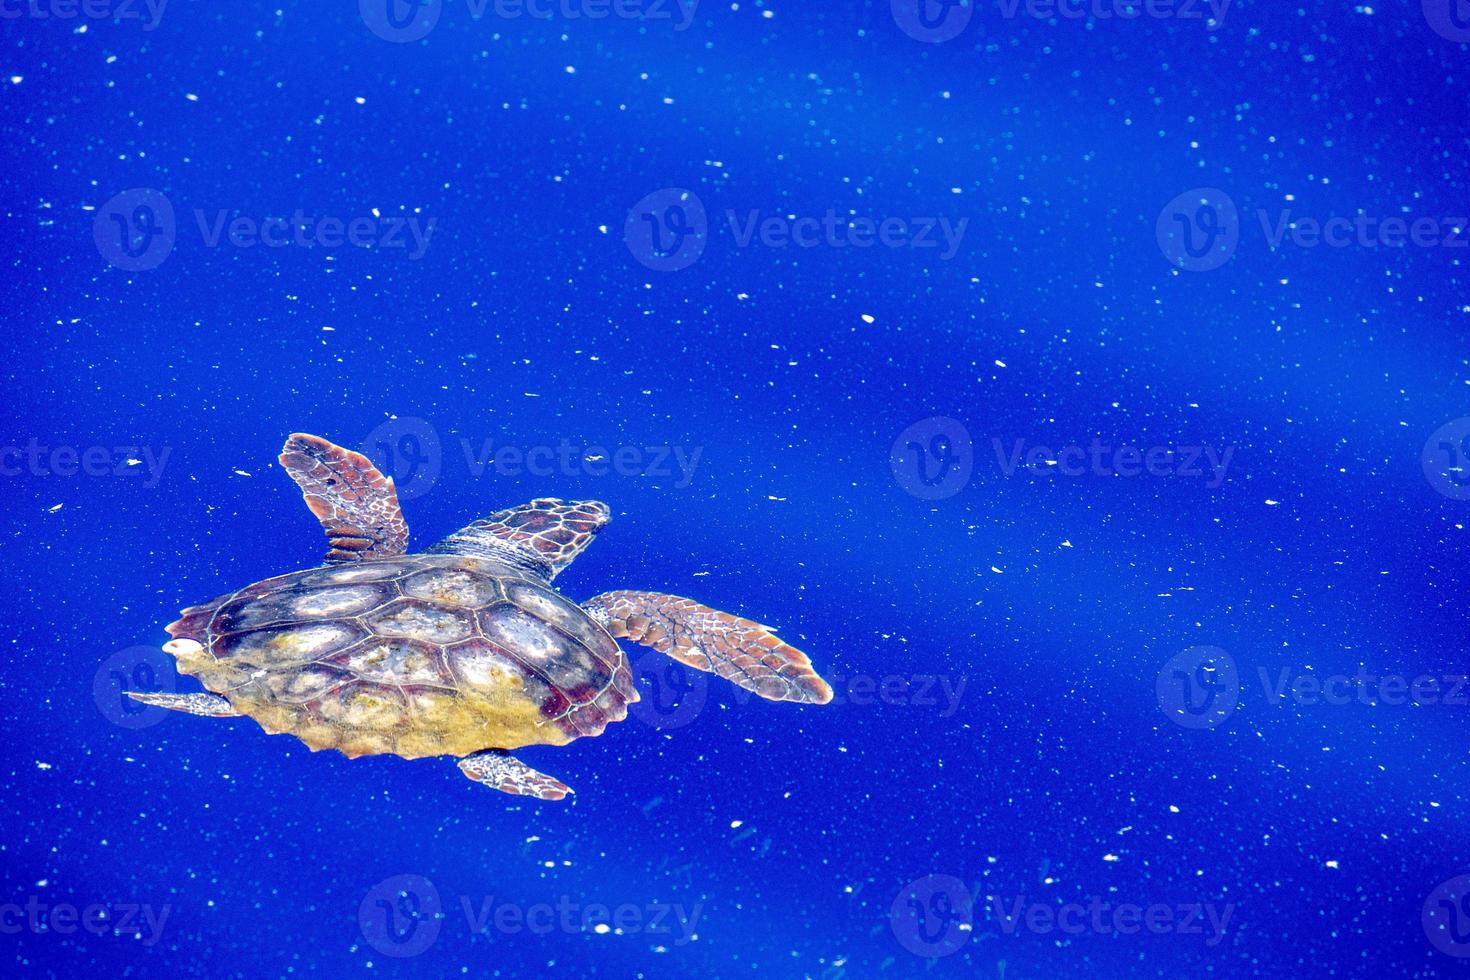 tartaruga marinha no mar de micro plástico foto